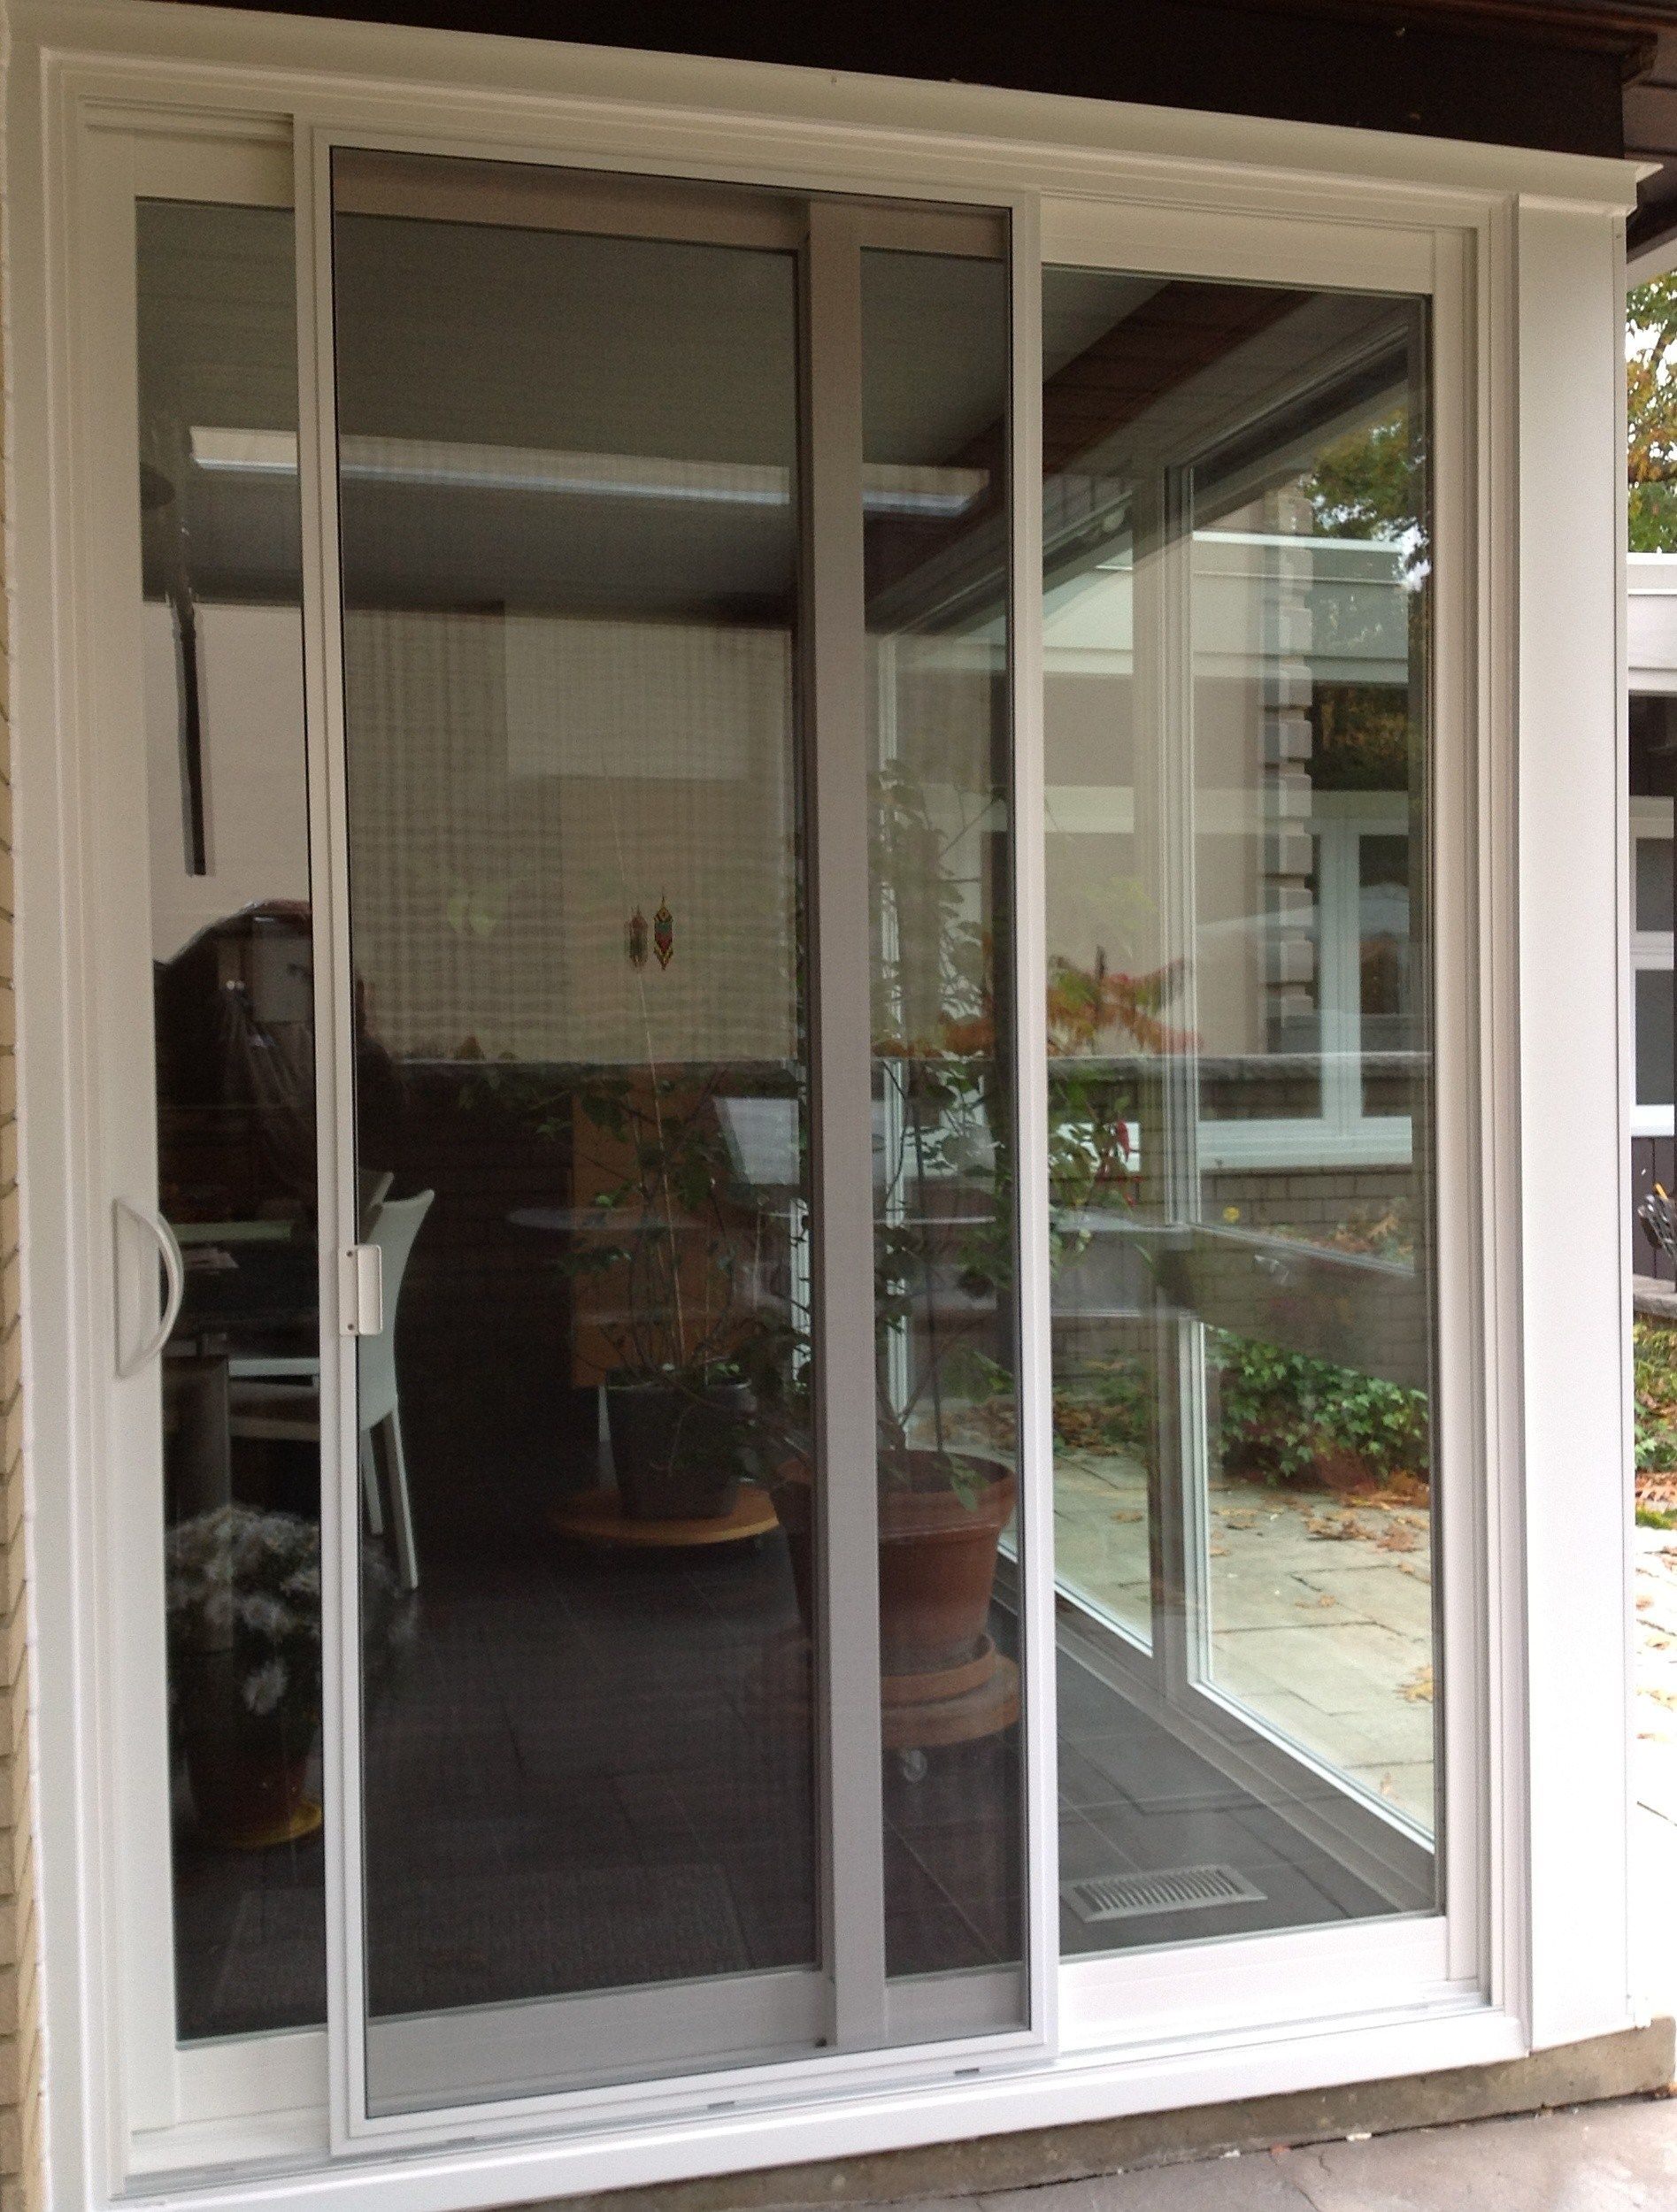 Best Of Door Handles For Sliding Glass Doors Home Decor inside size 1895 X 2500